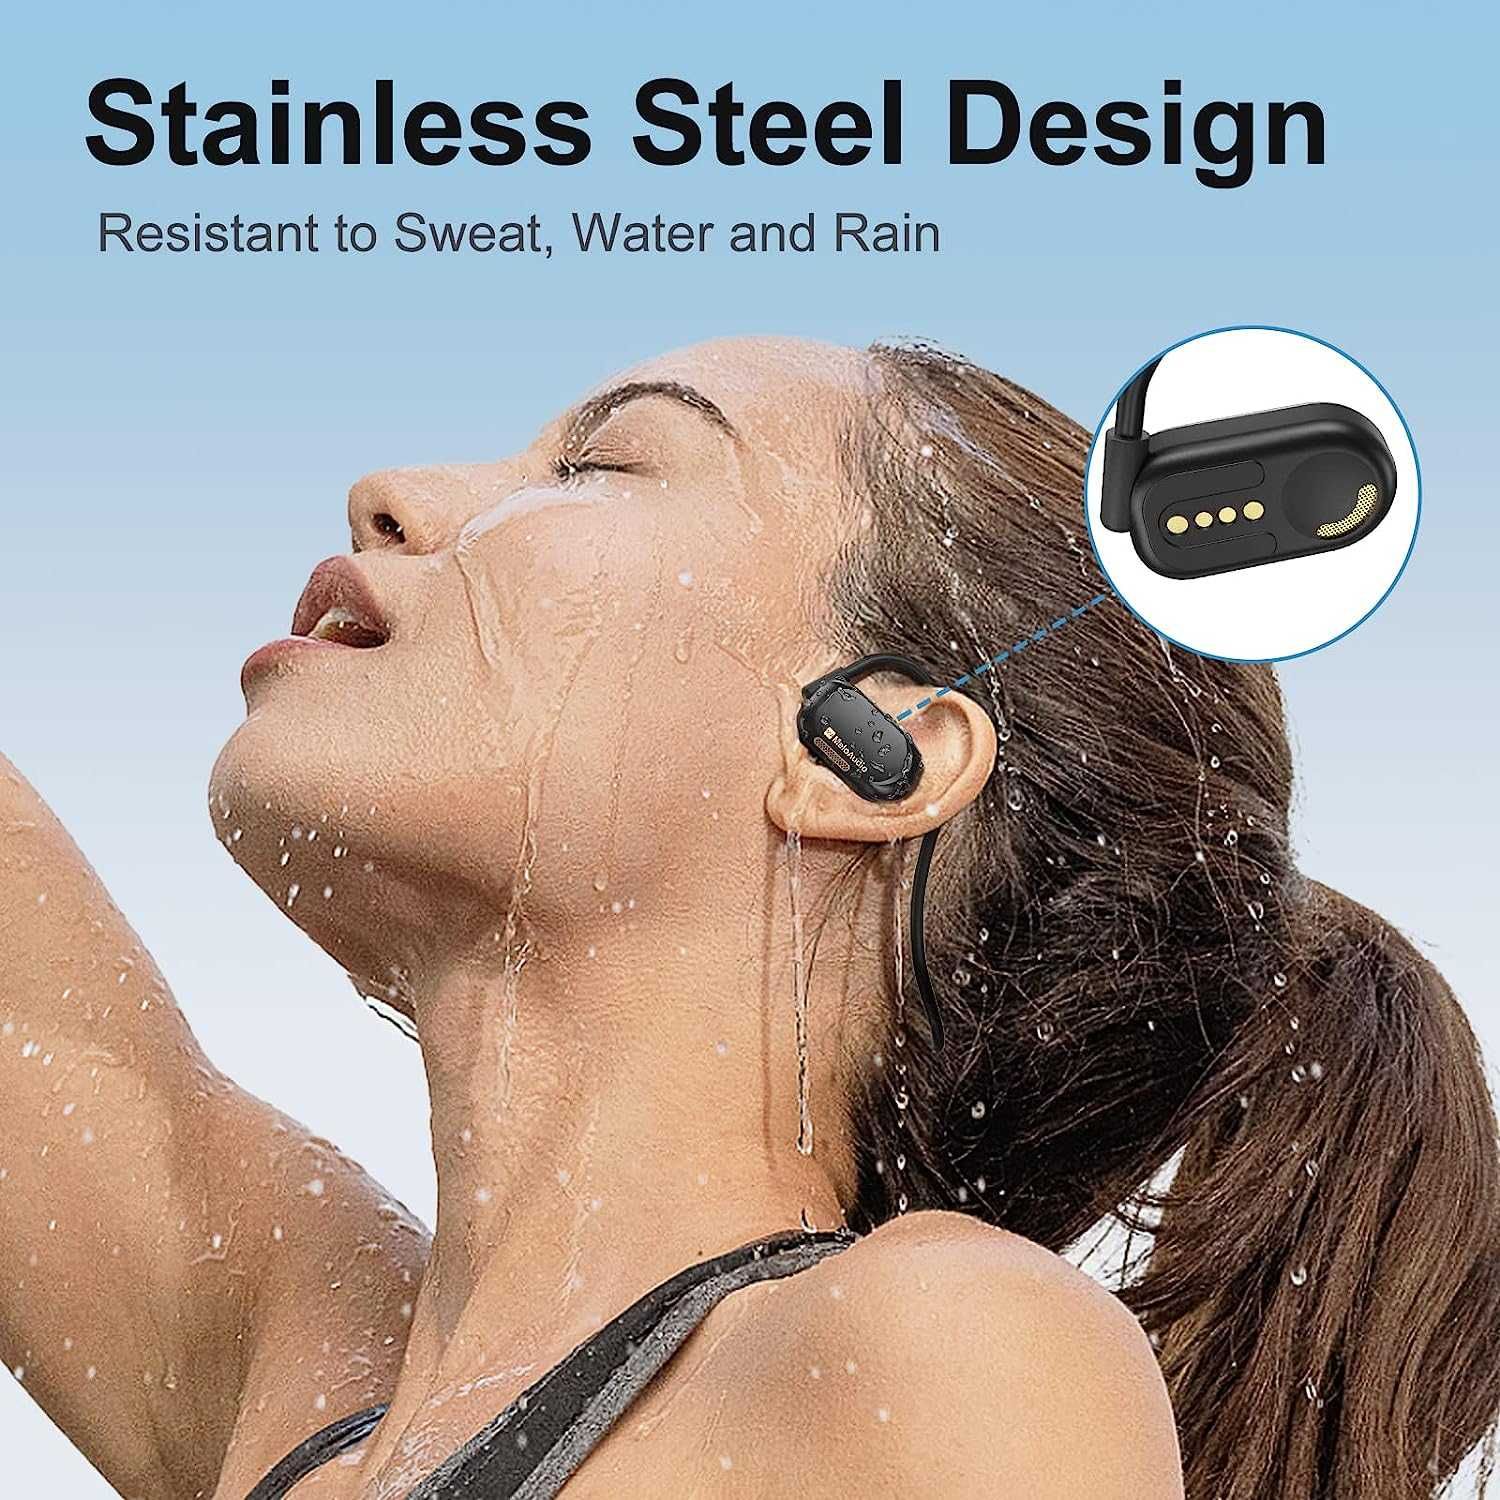 MeloAudio Open Ear слушалки Bluetooth за бягане шумопотискащ микрофон